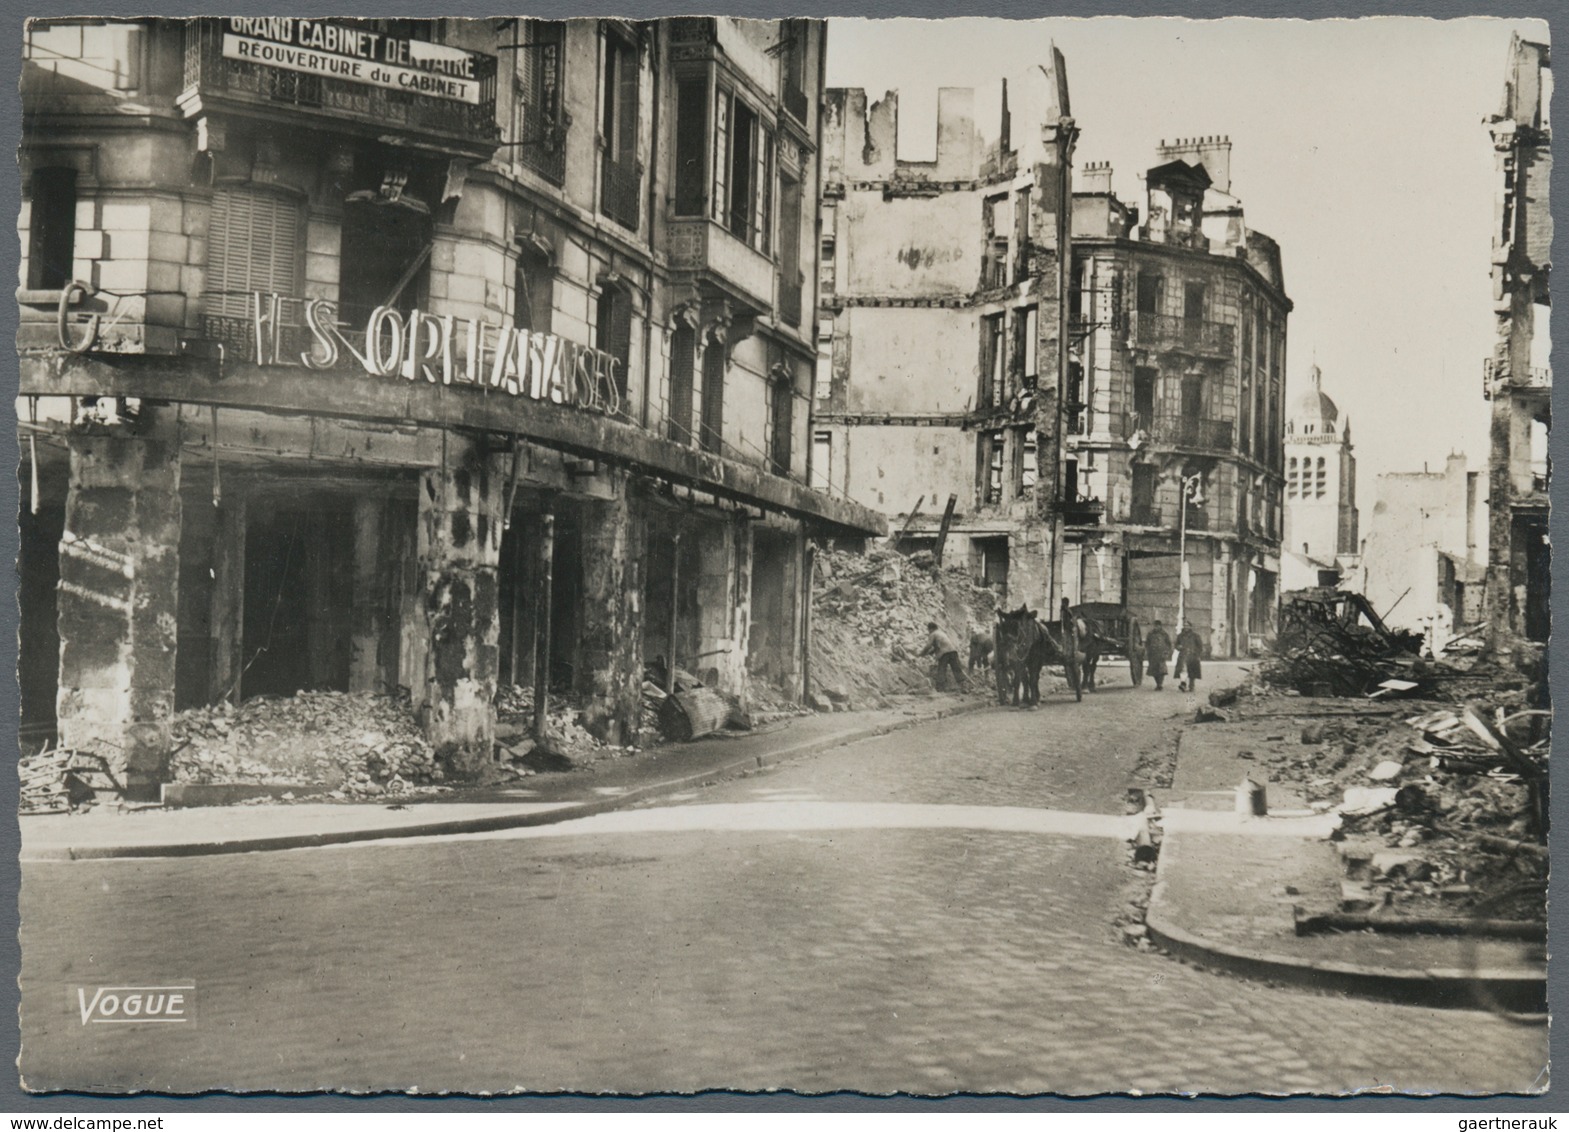 Ansichtskarten: Propaganda: 1940/1944, 18 Großformatige Fotokarten Mit Kriegszerstörungen In Orléans - Parteien & Wahlen